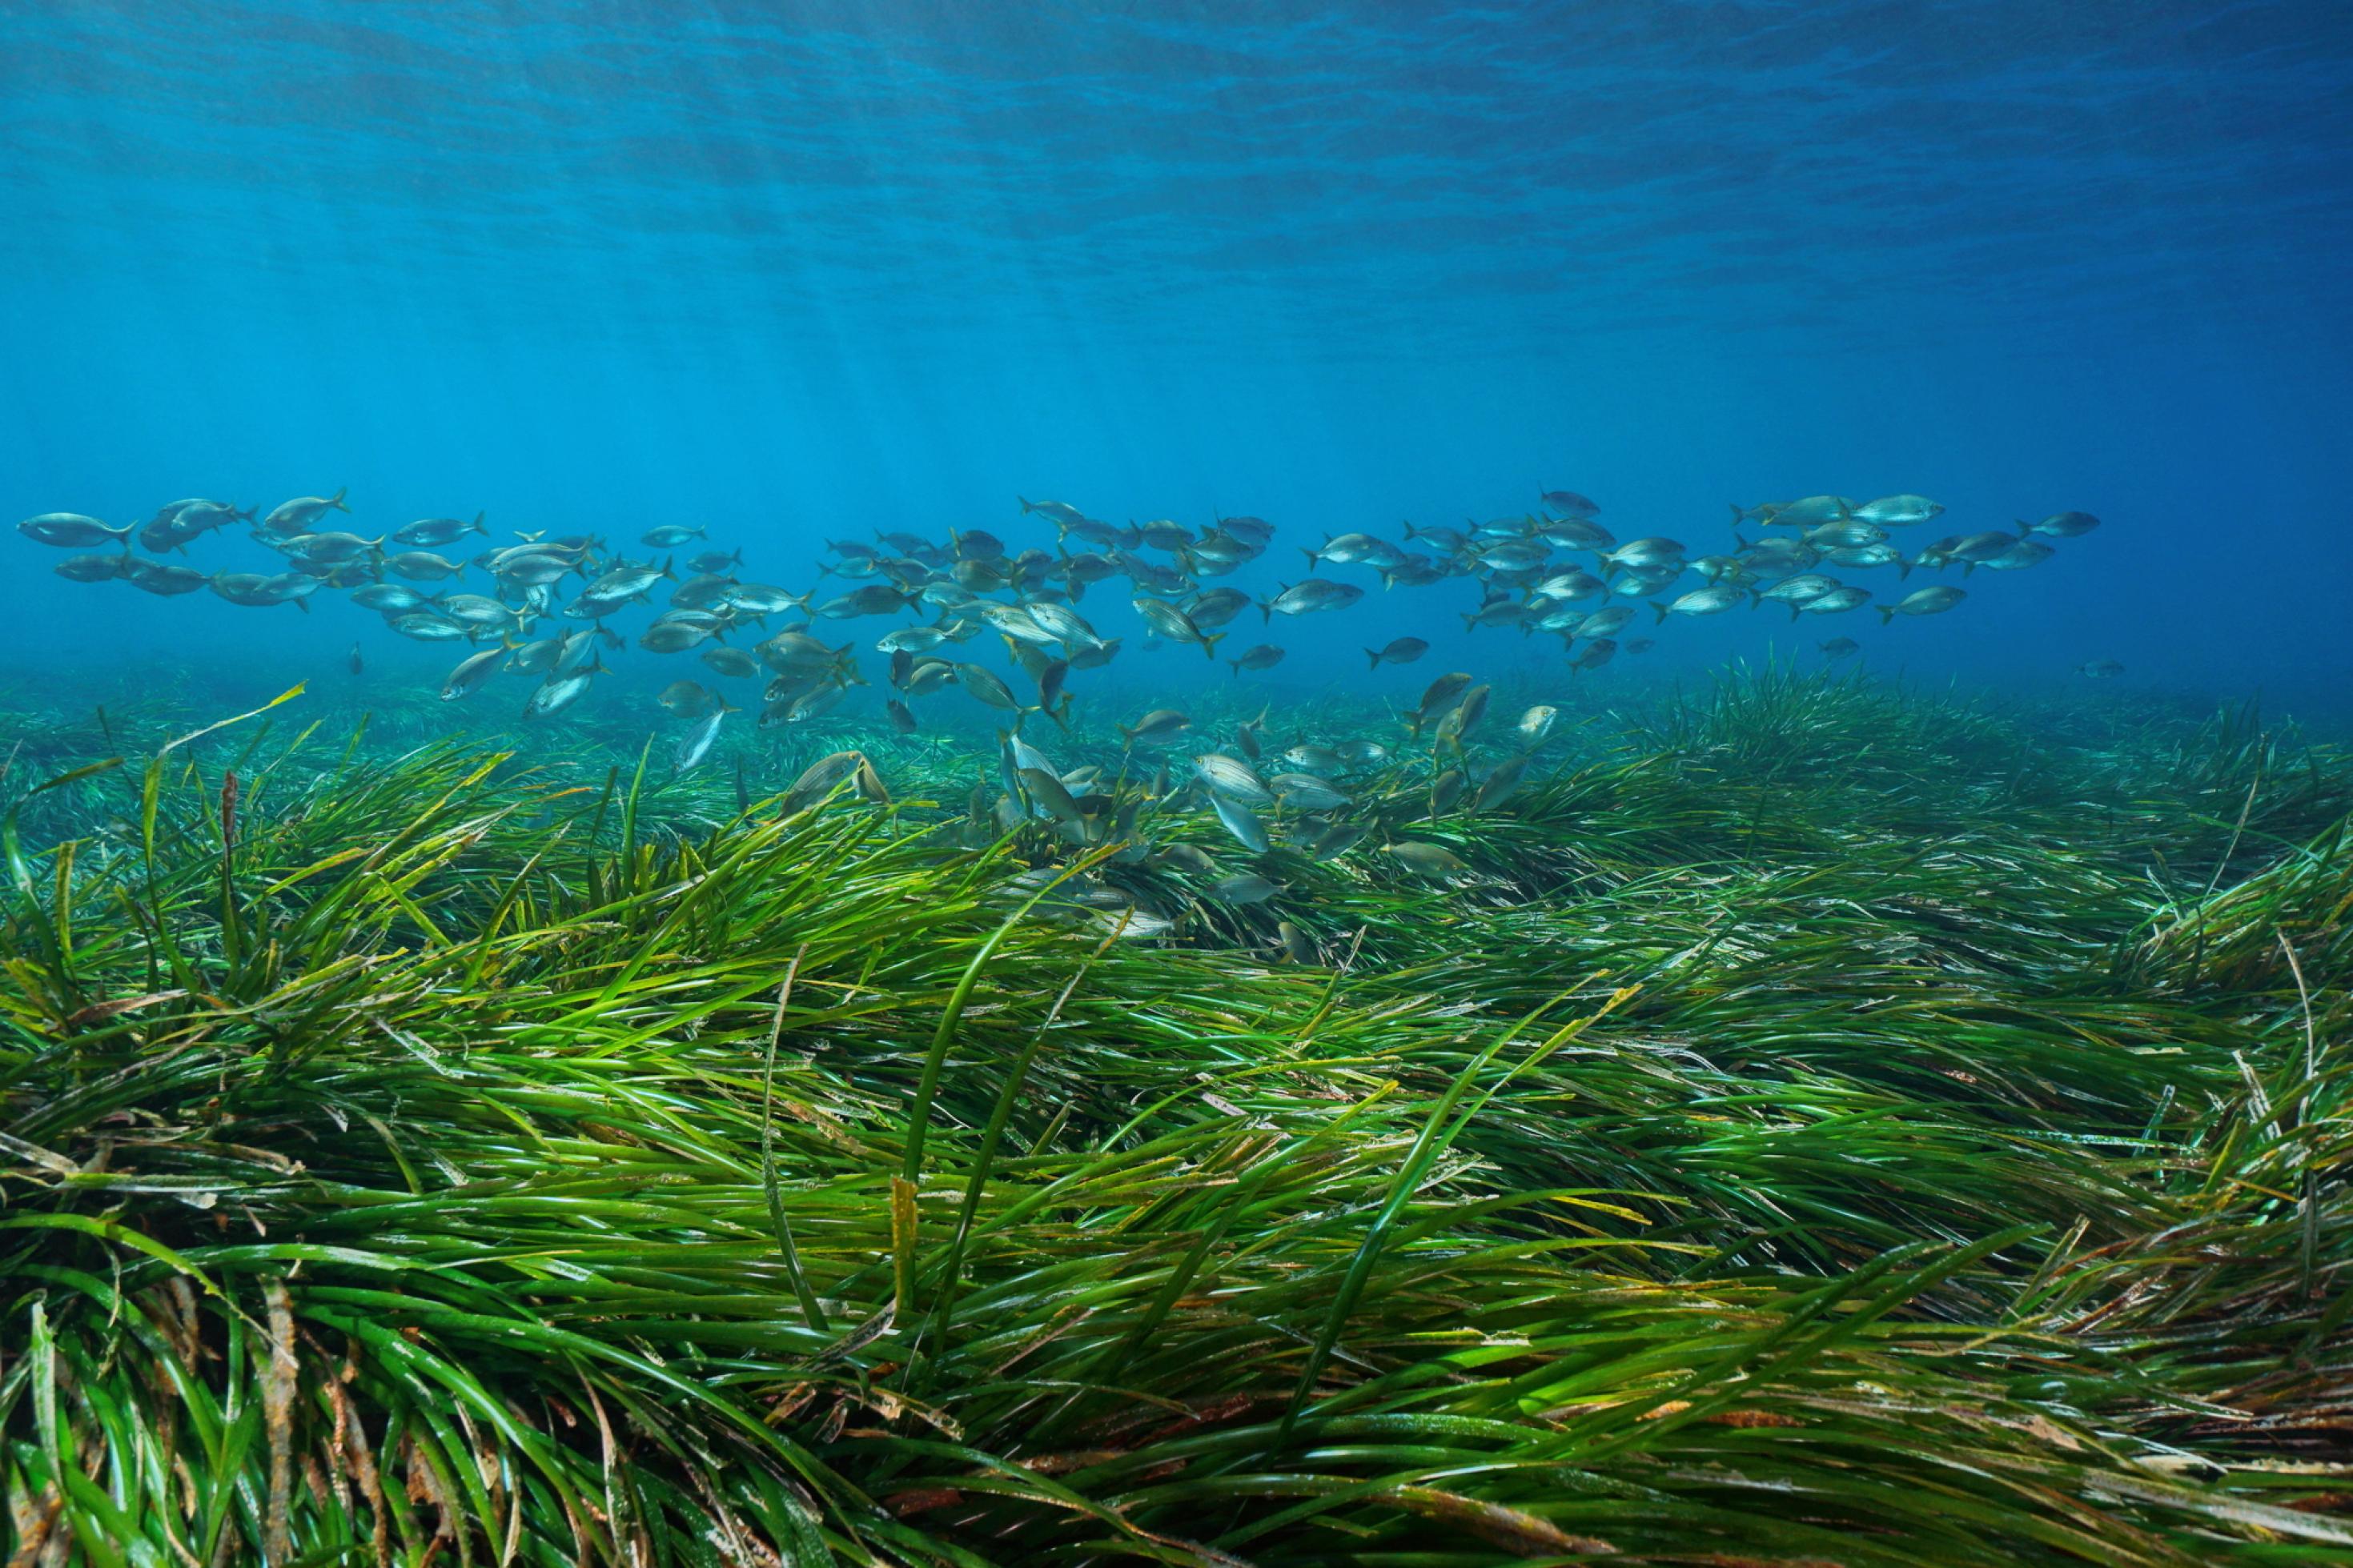 Grasvegetation auf dem Meeresboden, darüber ein Fischschwarm.